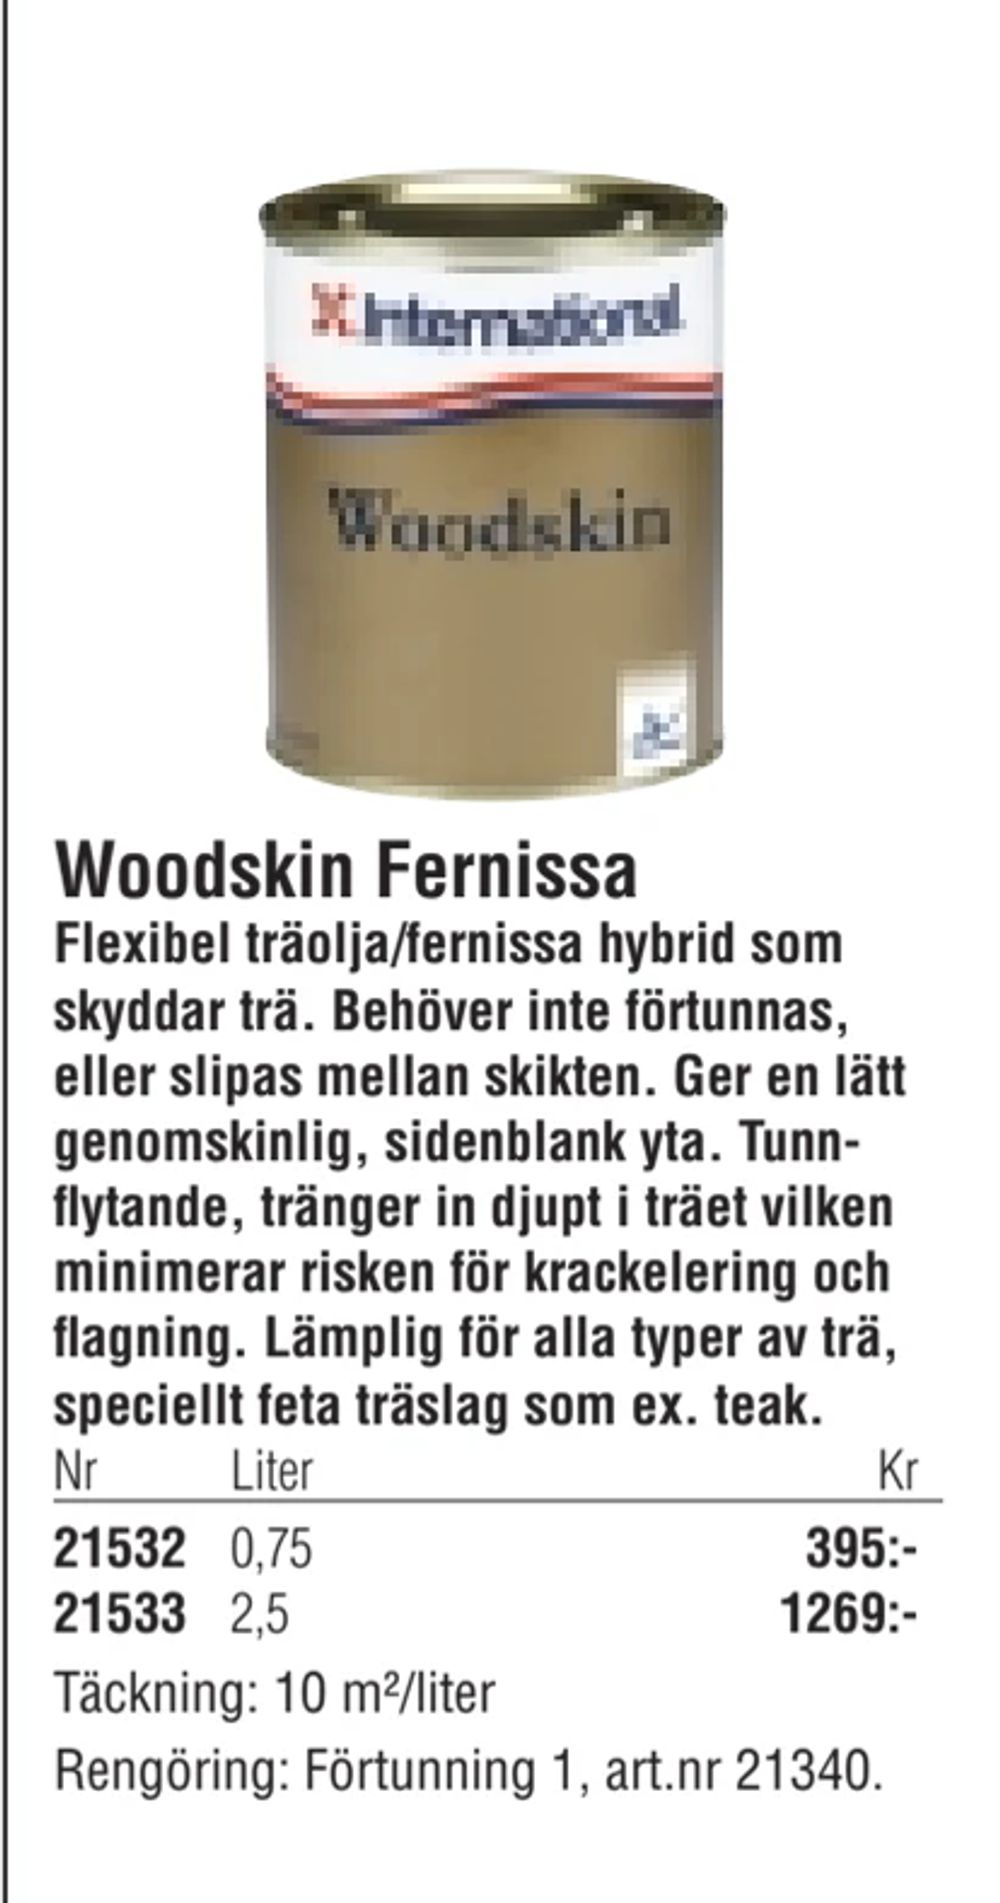 Erbjudanden på Woodskin Fernissa från Erlandsons Brygga för 395 kr